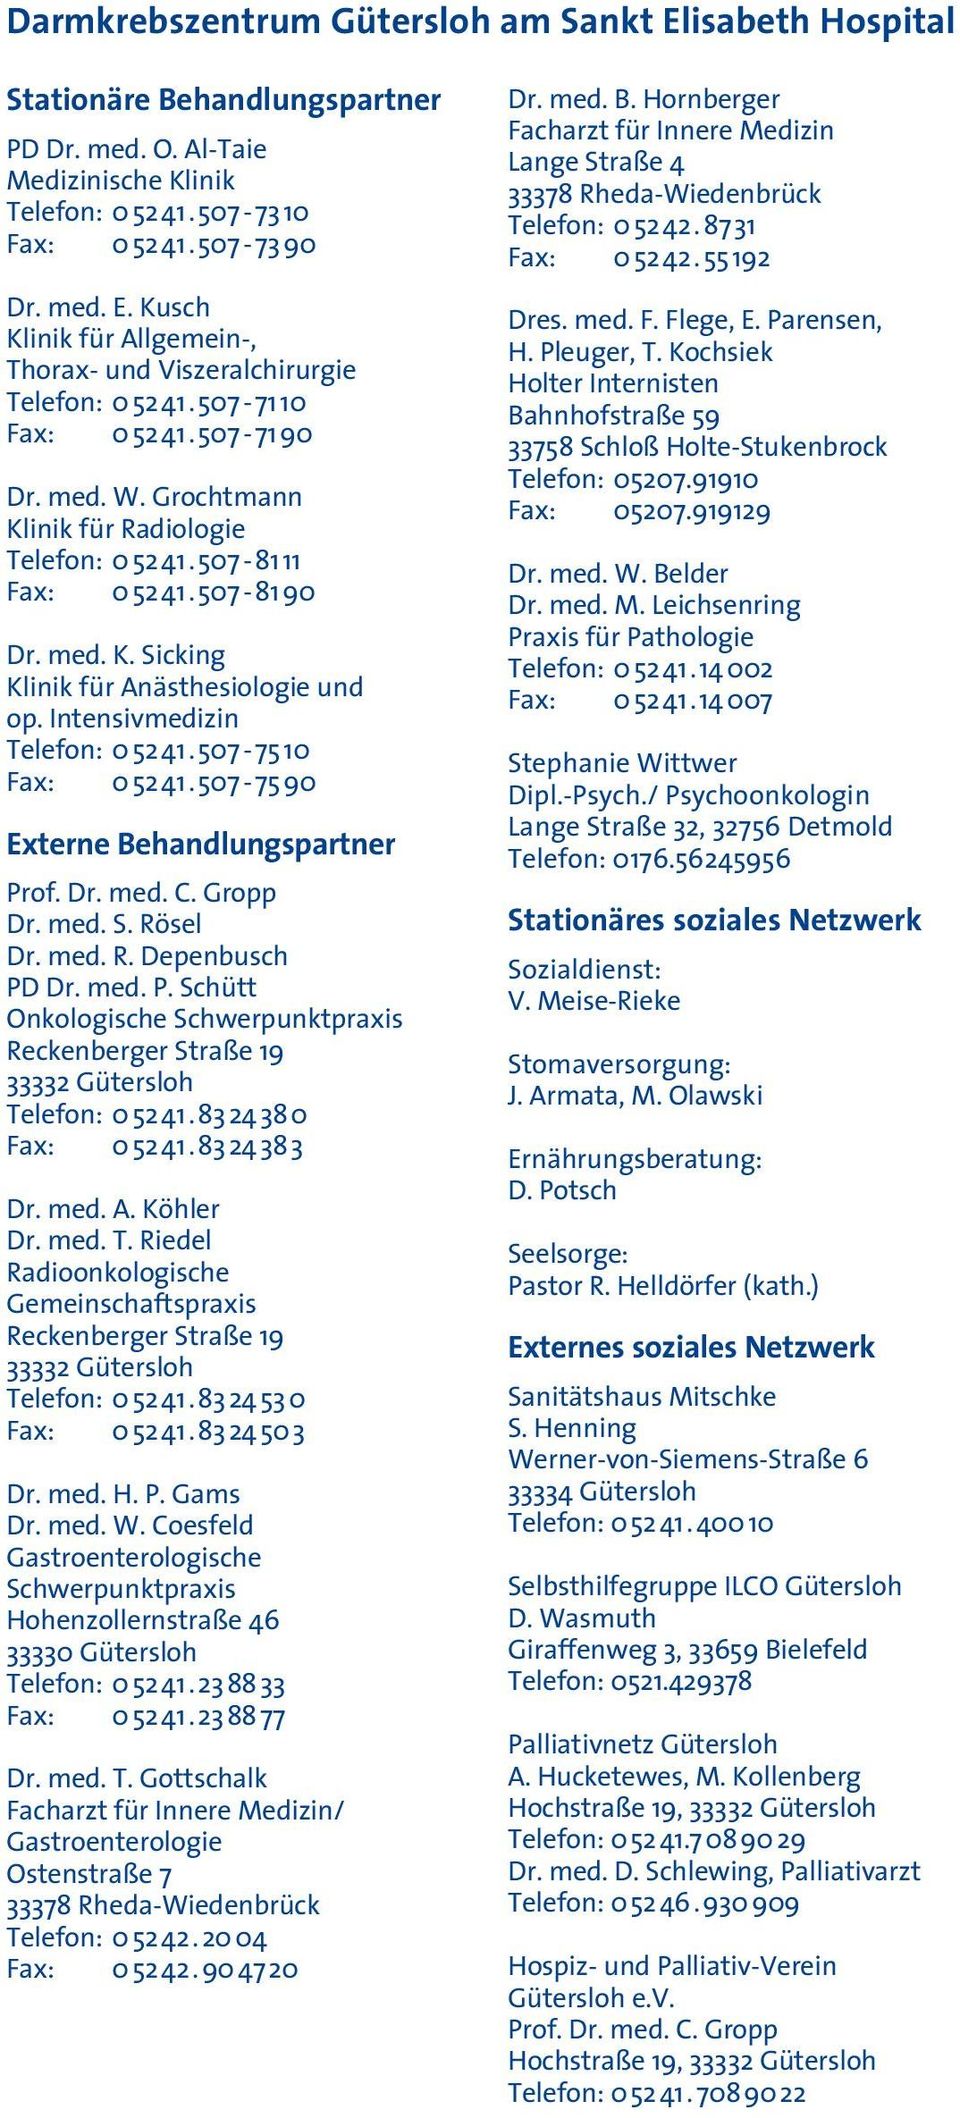 Intensivmedizin Telefon: 0 52 41. 507-75 10 Fax: 0 52 41. 507-75 90 Externe Behandlungspartner Prof. Dr. med. C. Gropp Dr. med. S. Rösel Dr. med. R. Depenbusch PD Dr. med. P. Schütt Onkologische Schwerpunktpraxis Reckenberger Straße 19 33332 Gütersloh Telefon: 0 52 41.